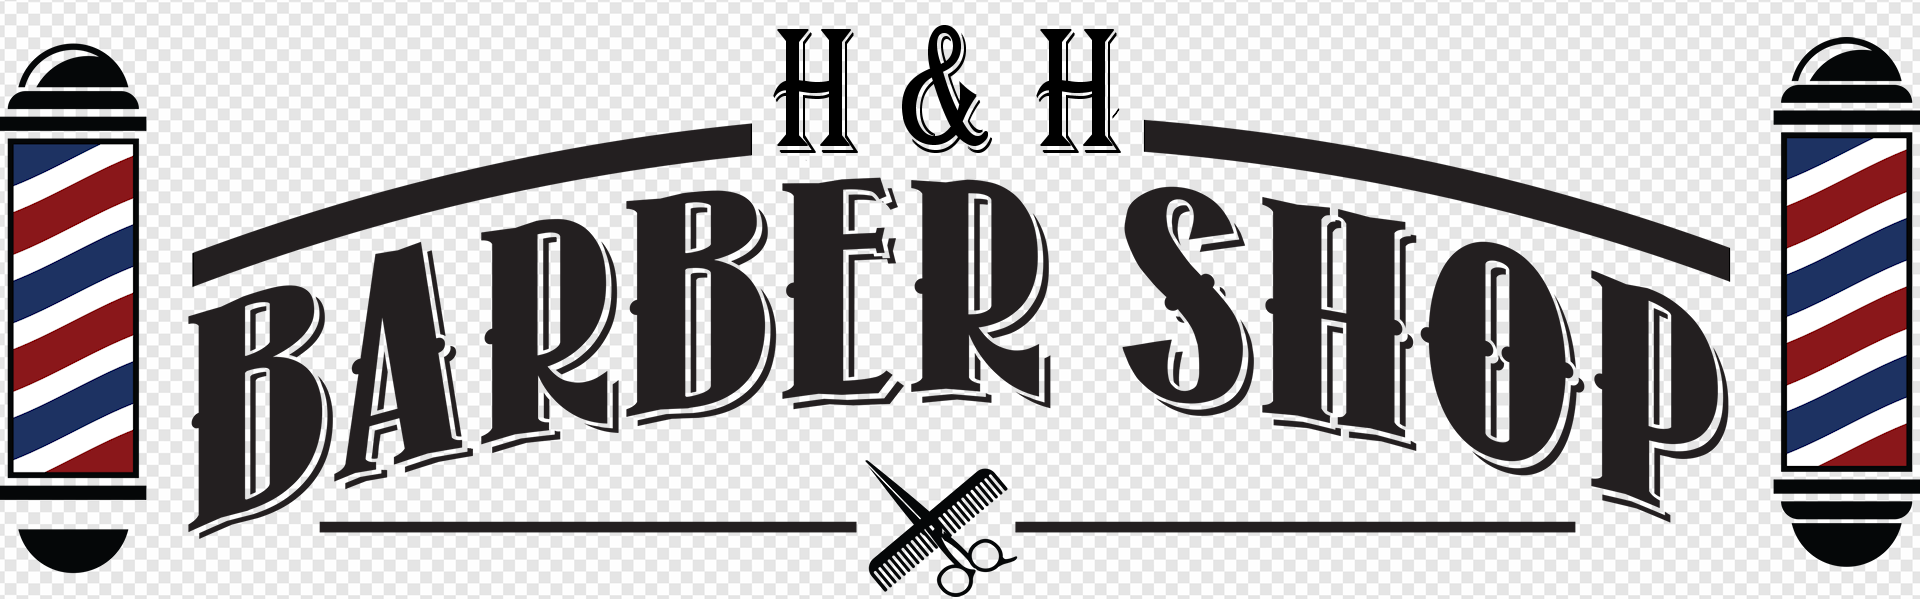 Logotype, Emblem, Barber, Barbershop - Logo - Free Transparent PNG Download  - PNGkey